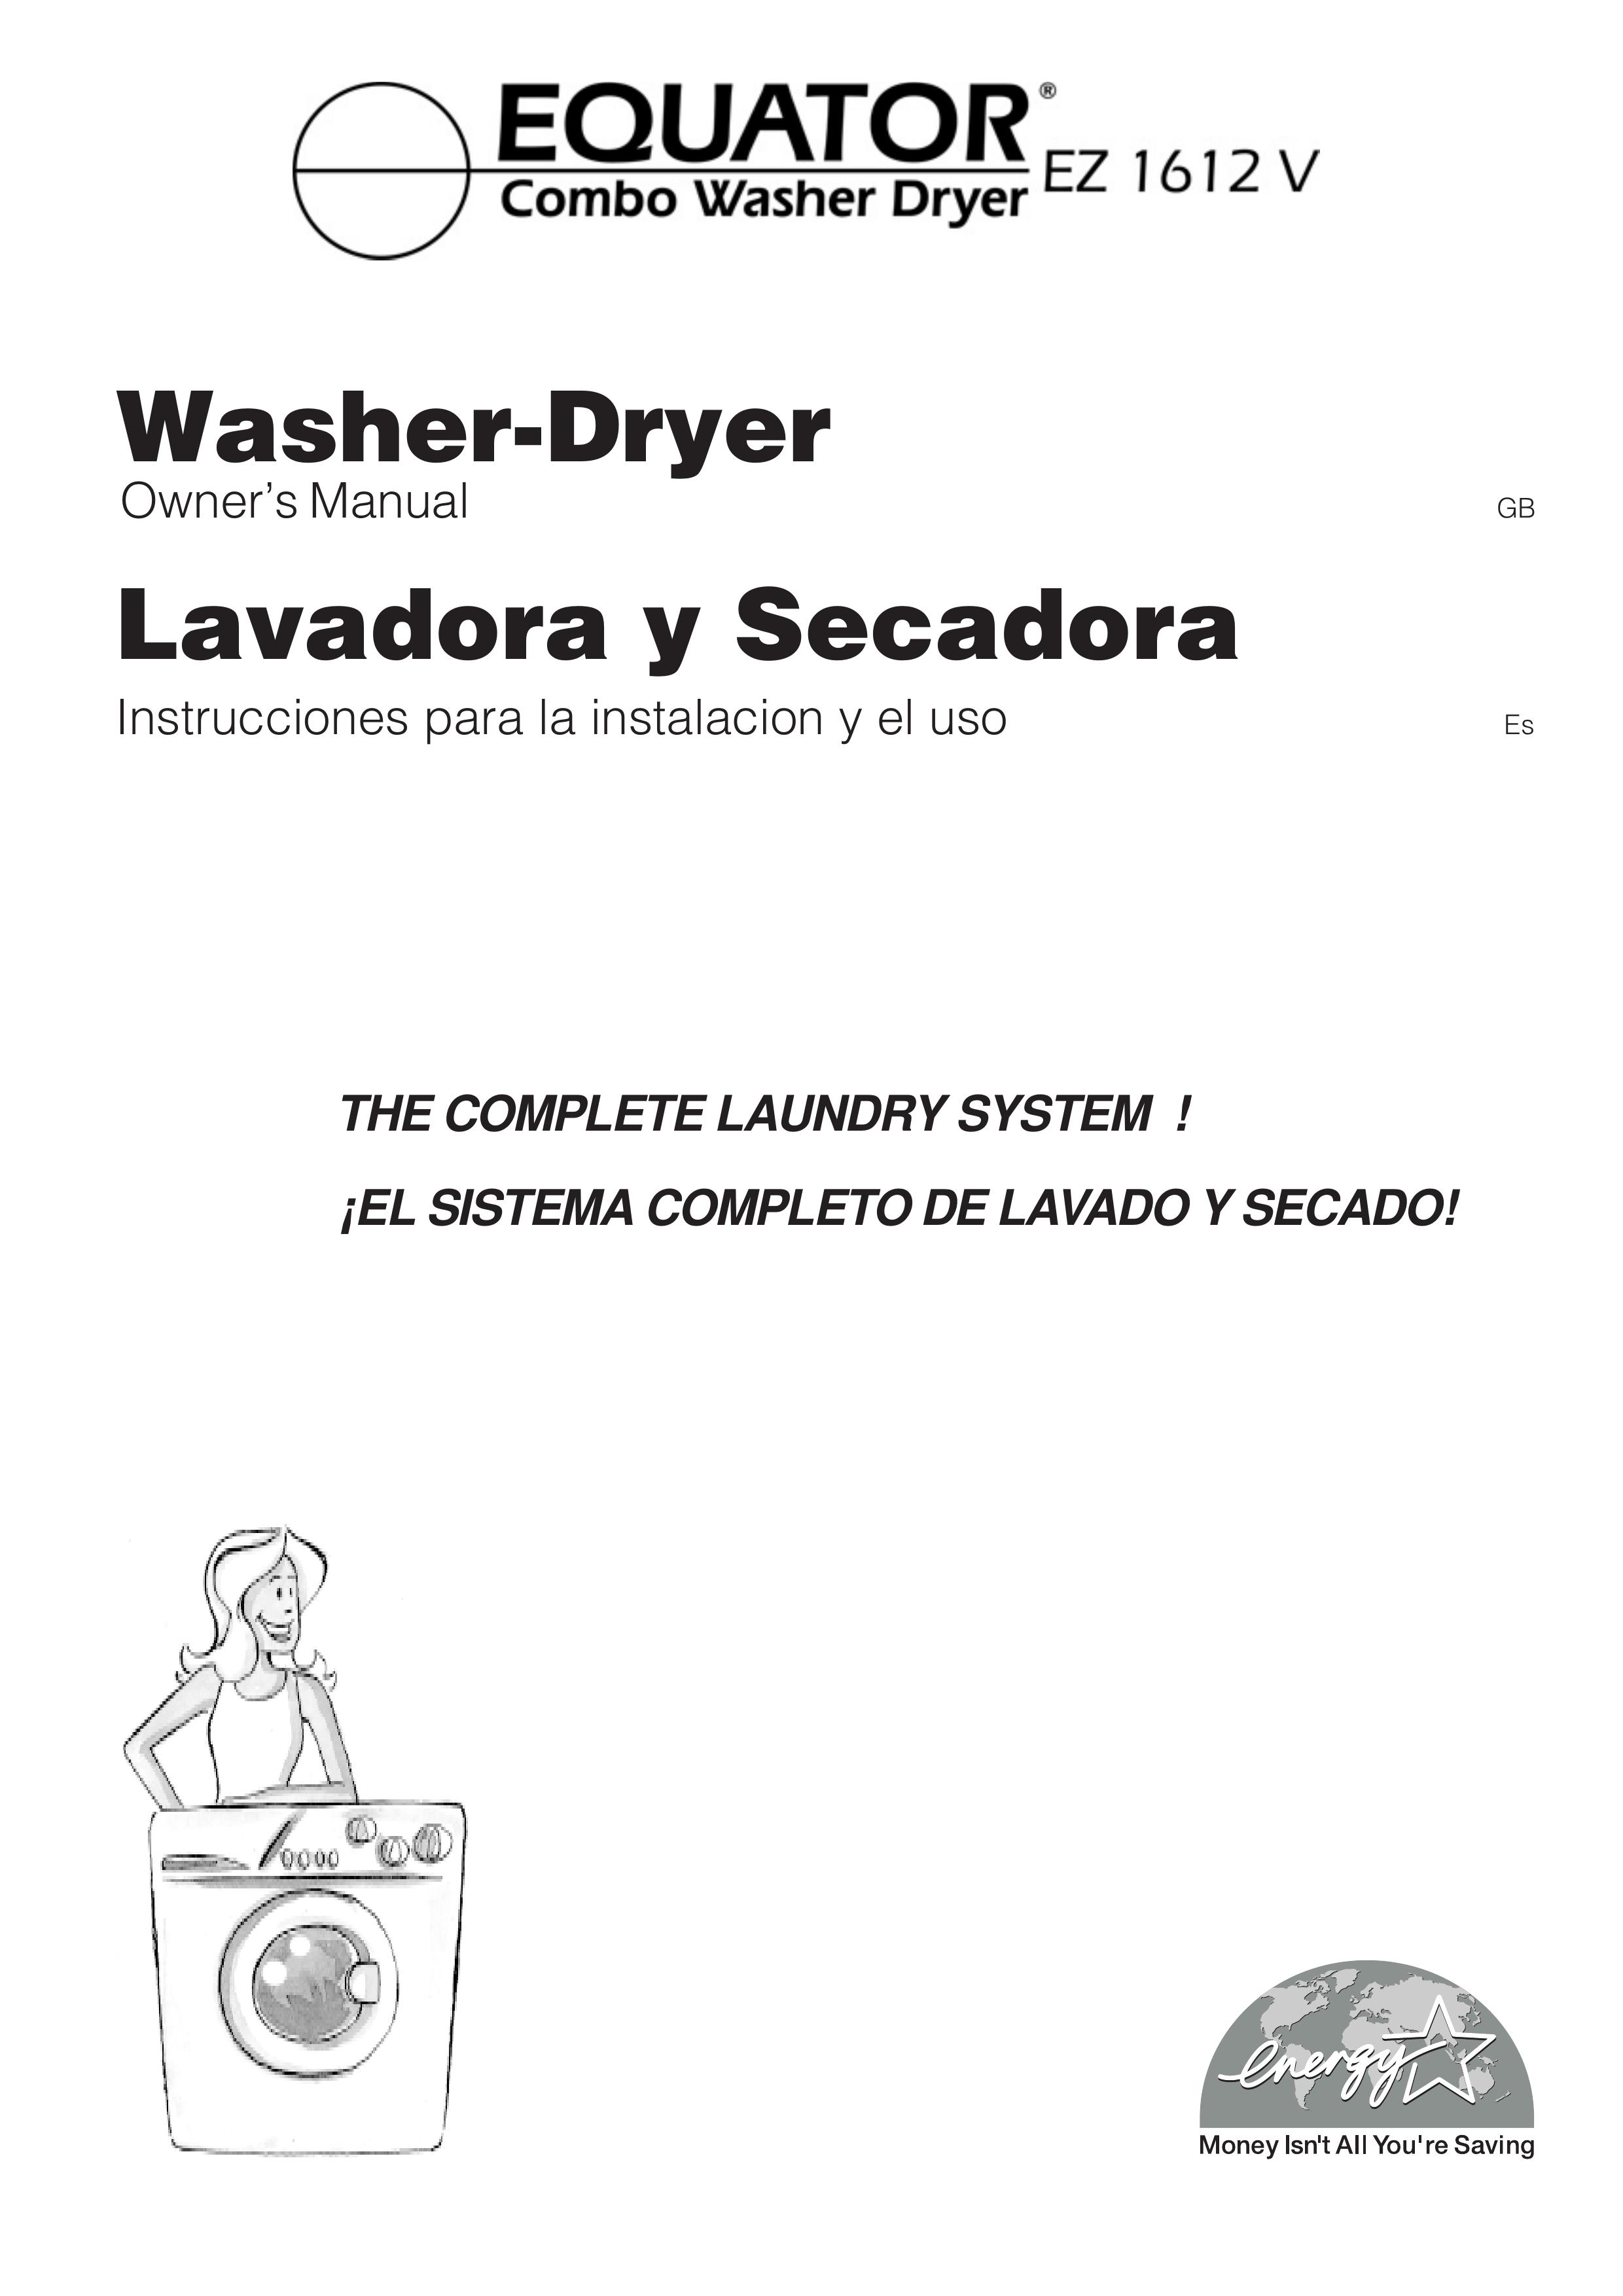 Equator EZ 1612 V Washer/Dryer User Manual